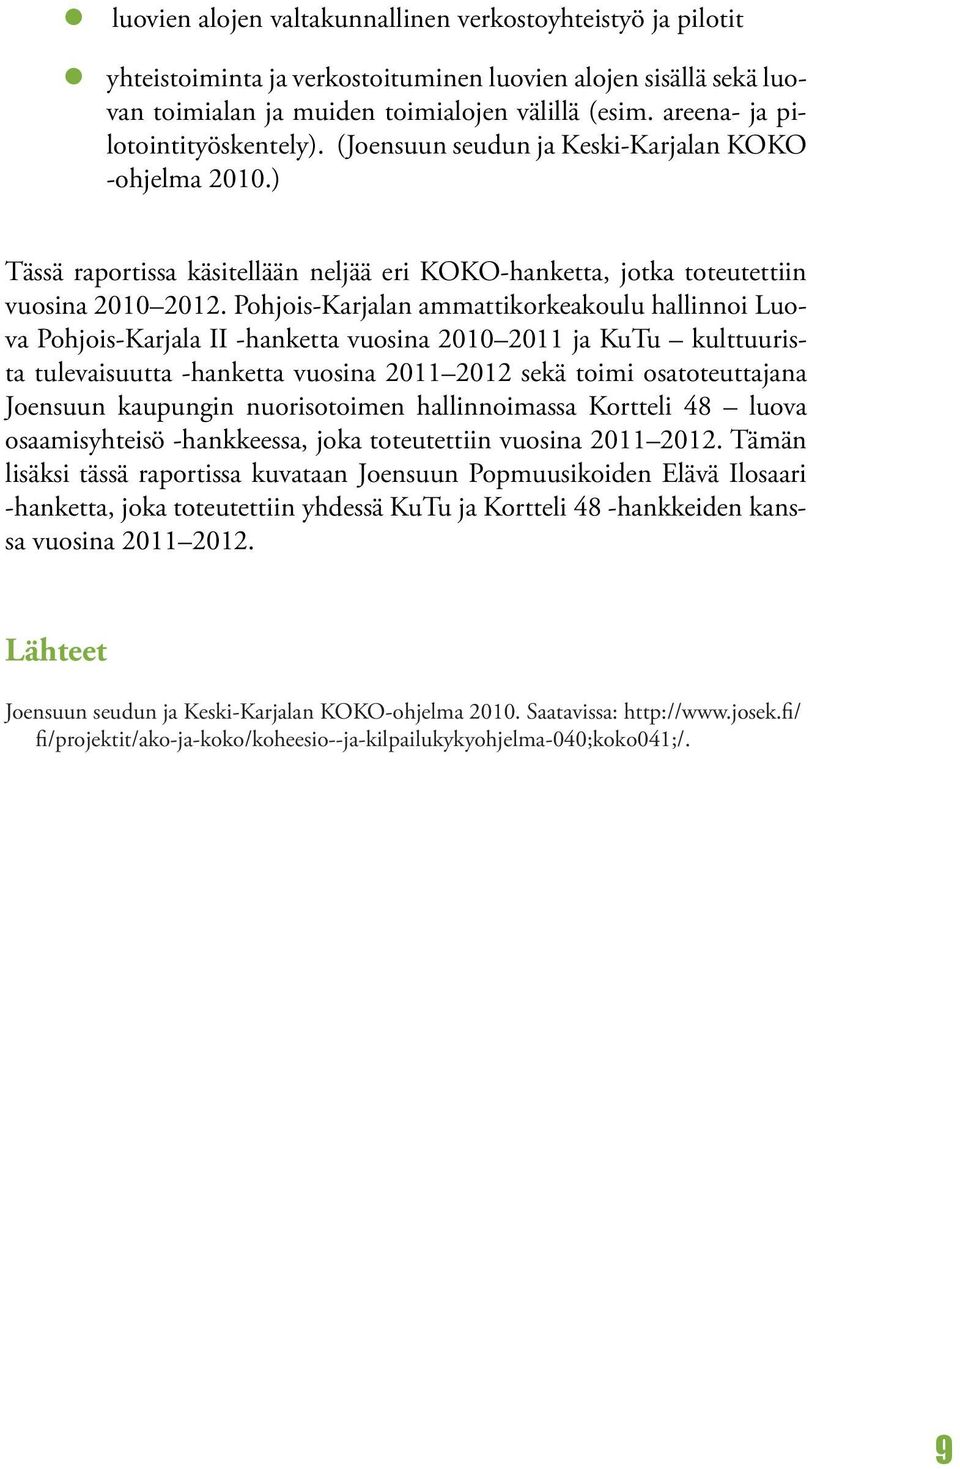 Pohjois-Karjalan ammattikorkeakoulu hallinnoi Luova Pohjois-Karjala II -hanketta vuosina 2010 2011 ja KuTu kulttuurista tulevaisuutta -hanketta vuosina 2011 2012 sekä toimi osatoteuttajana Joensuun